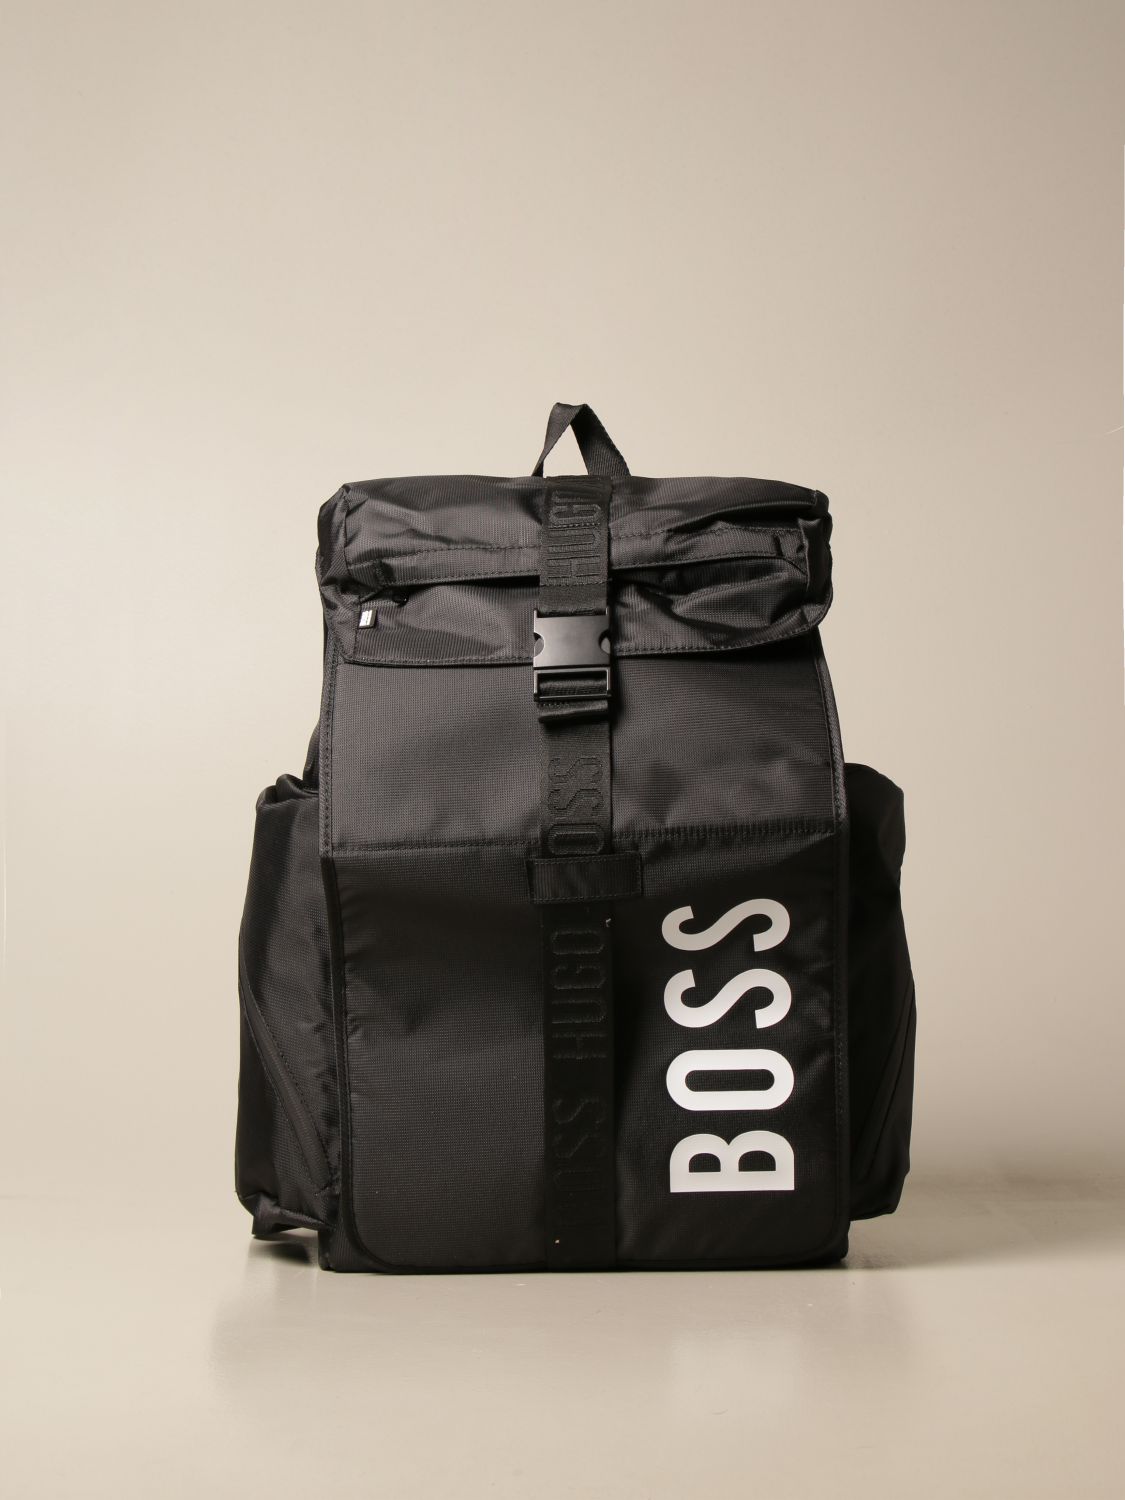 hugo boss backpack uk